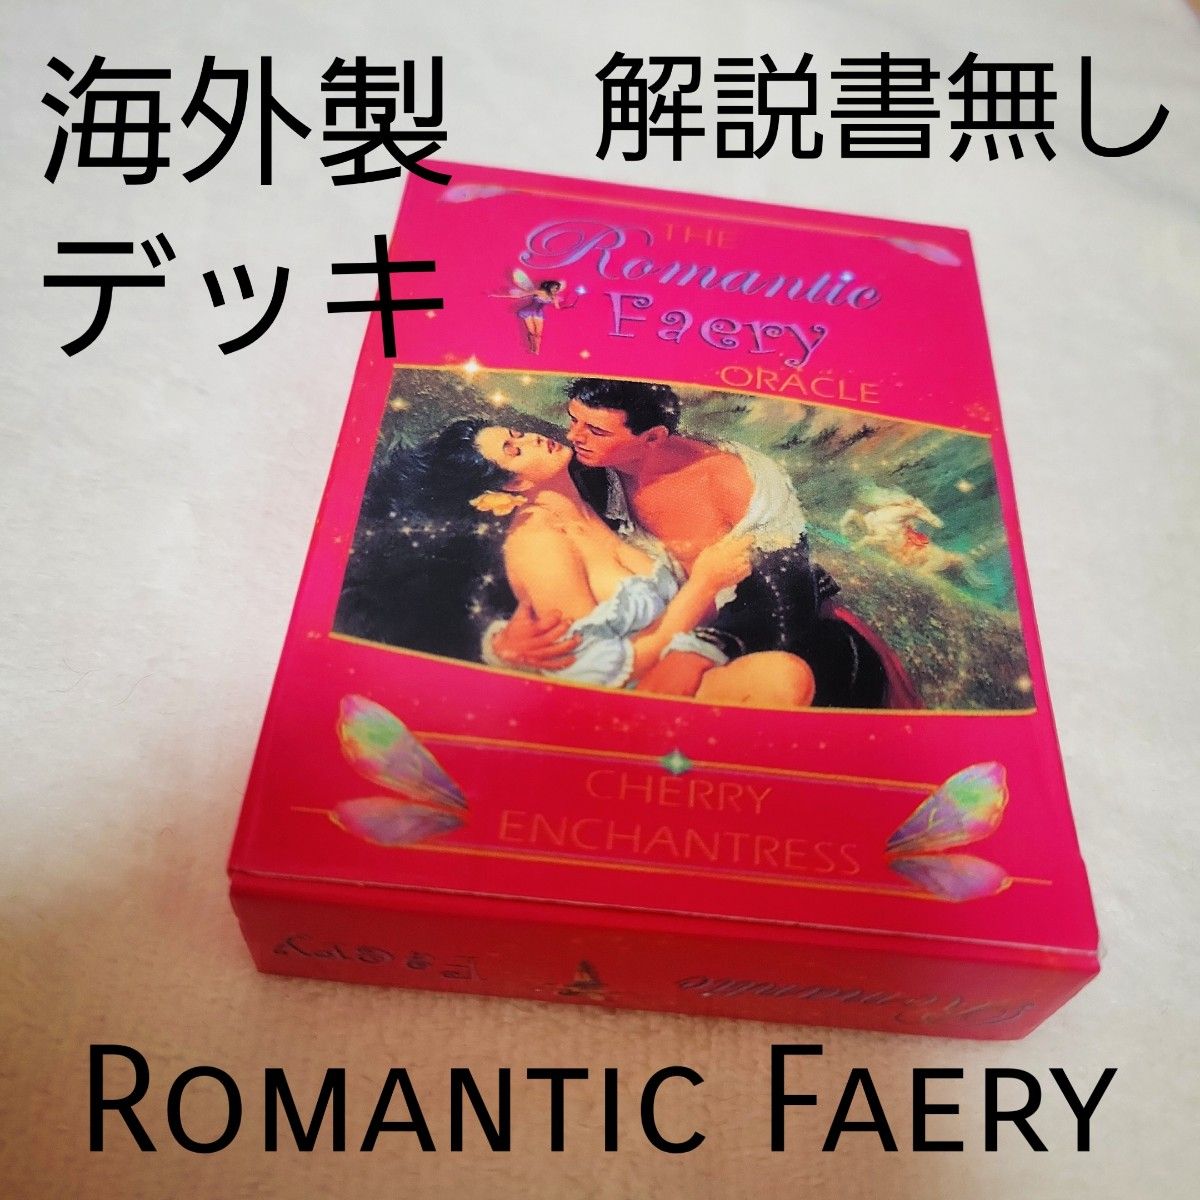 「海外版」「解説書なし」Romantic Faery ORACLE ロマンティックフェアリーオラクル 「値引きNO」